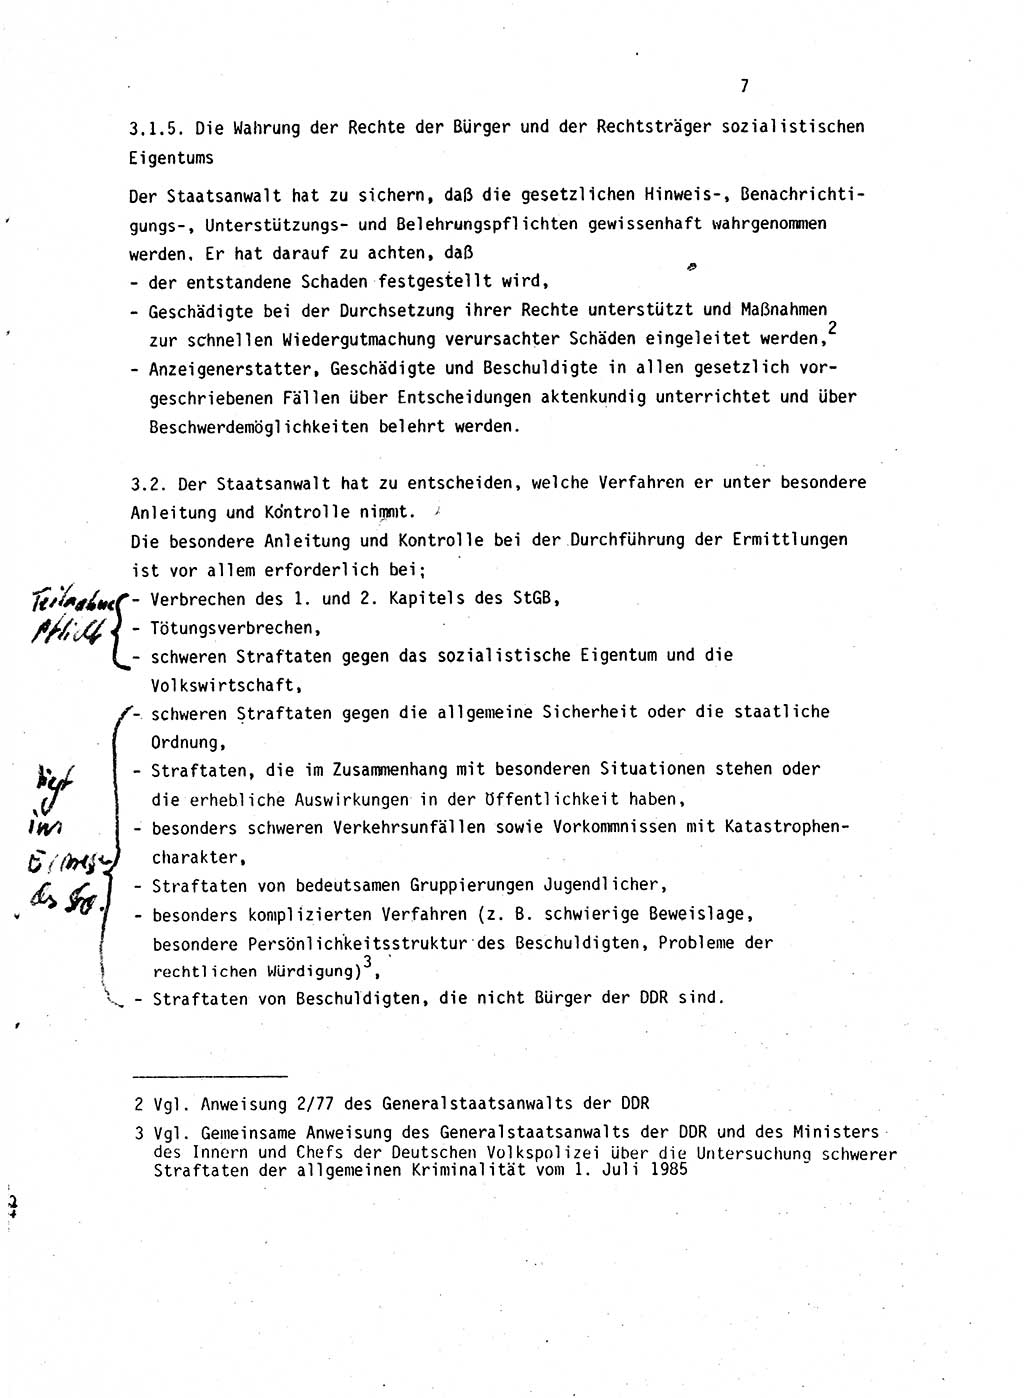 Leitung des Ermittlungsverfahren (EV) durch den Staatsanwalt [Deutsche Demokratische Republik (DDR)] 1985, Seite 7 (Ltg. EV StA DDR 1985, S. 7)